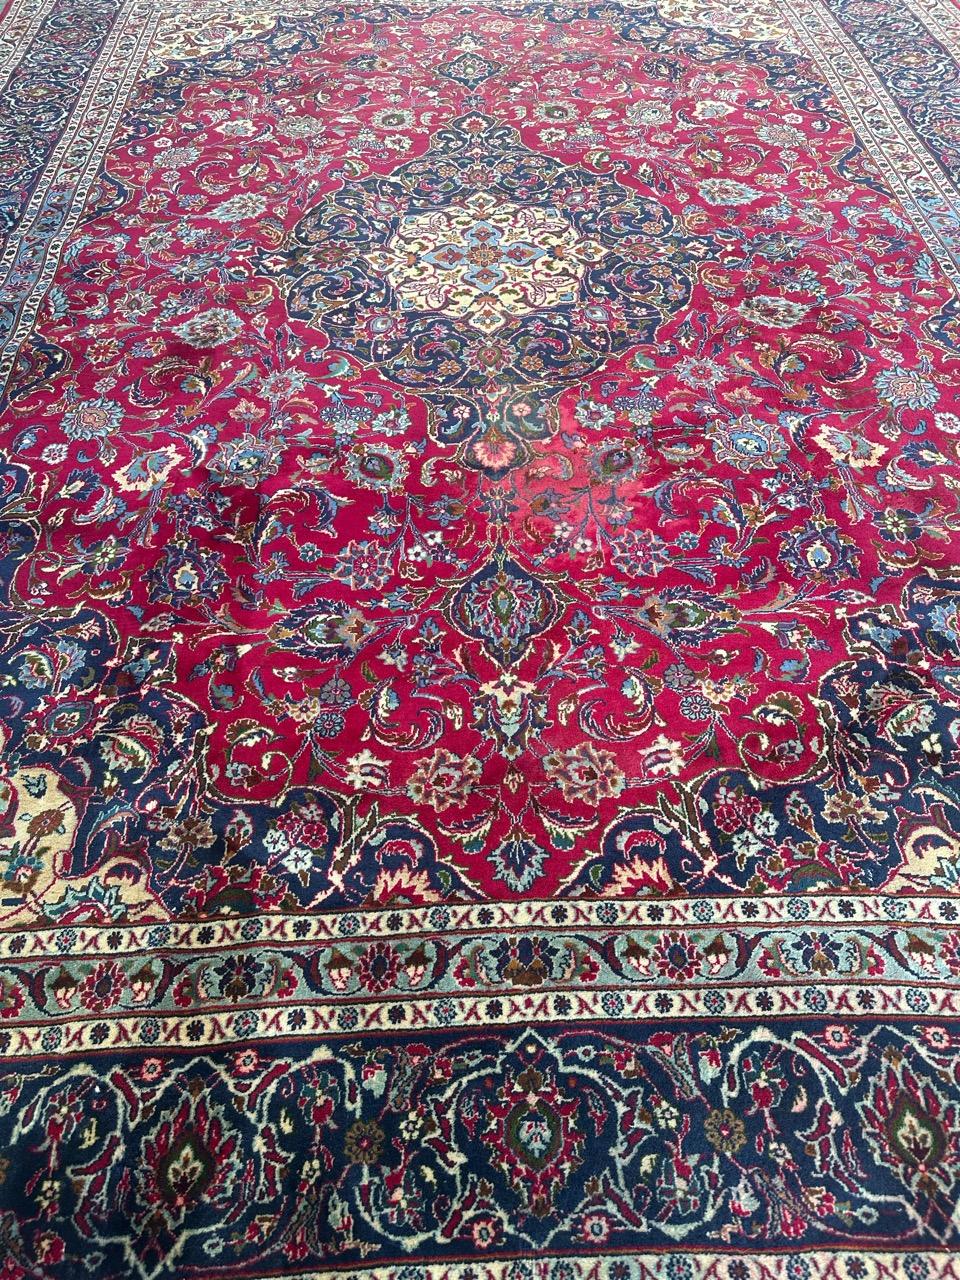 Sehr schöner großer Kashan-Teppich aus der Mitte des Jahrhunderts mit schönem Blumenmuster mit Palmetten und Arabesken und schönen Farben mit einem rosa-roten Feld und einem marineblauen Feld an der Grenze, mit roten, himmelblauen, grünen und